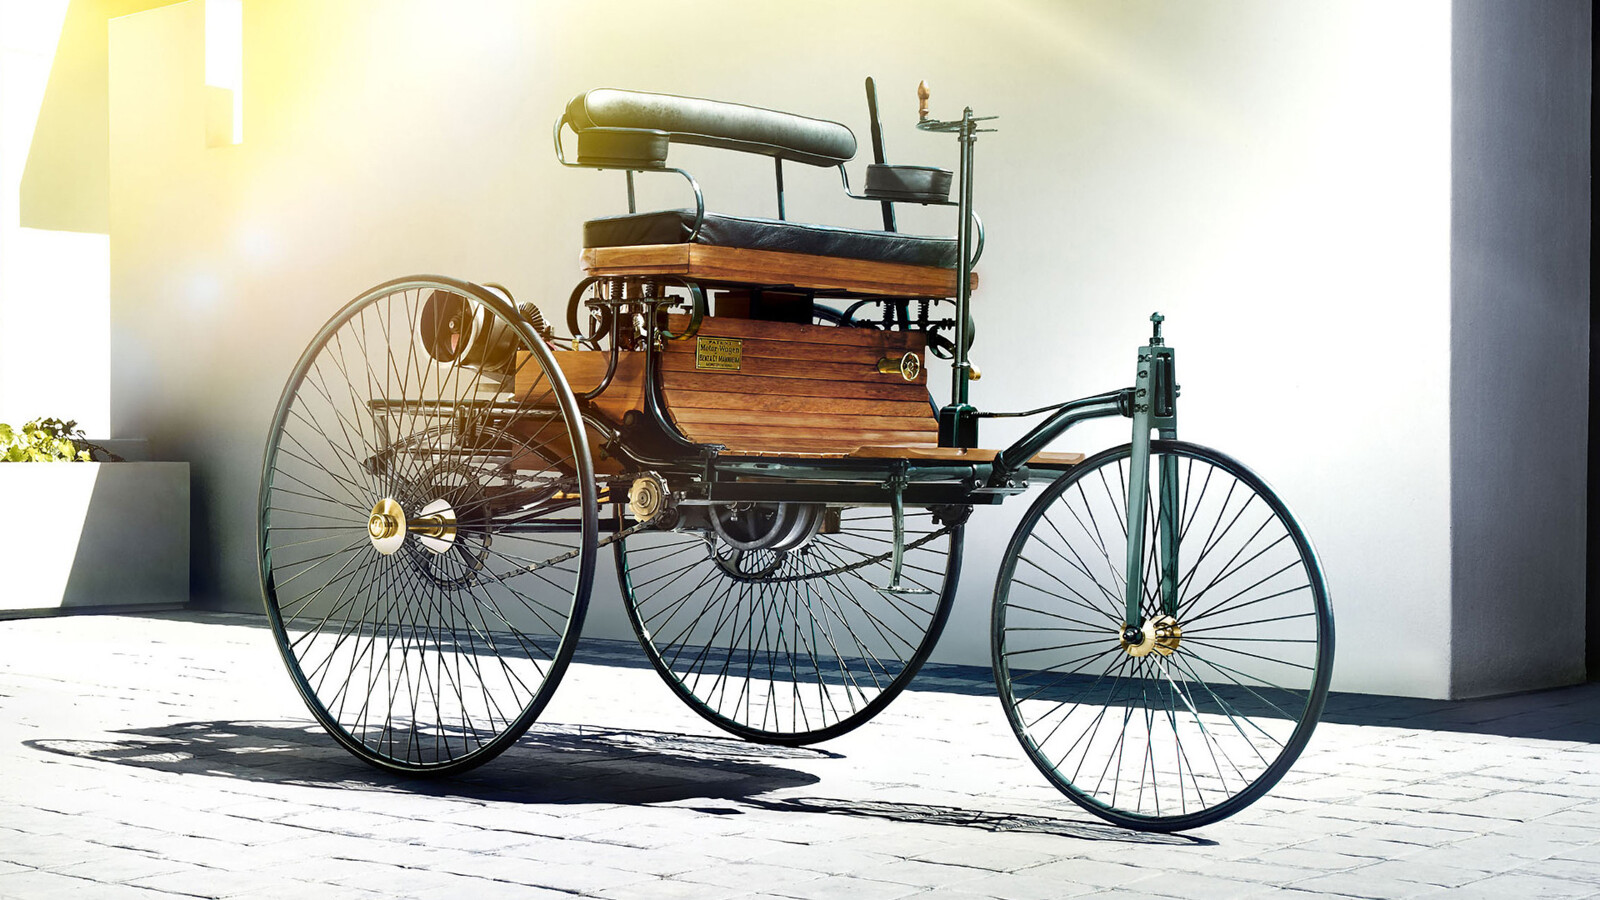 Первая машина механика. Машина Benz Patent-Motorwagen. Mercedes-Benz Motorwagen (1885 г.).